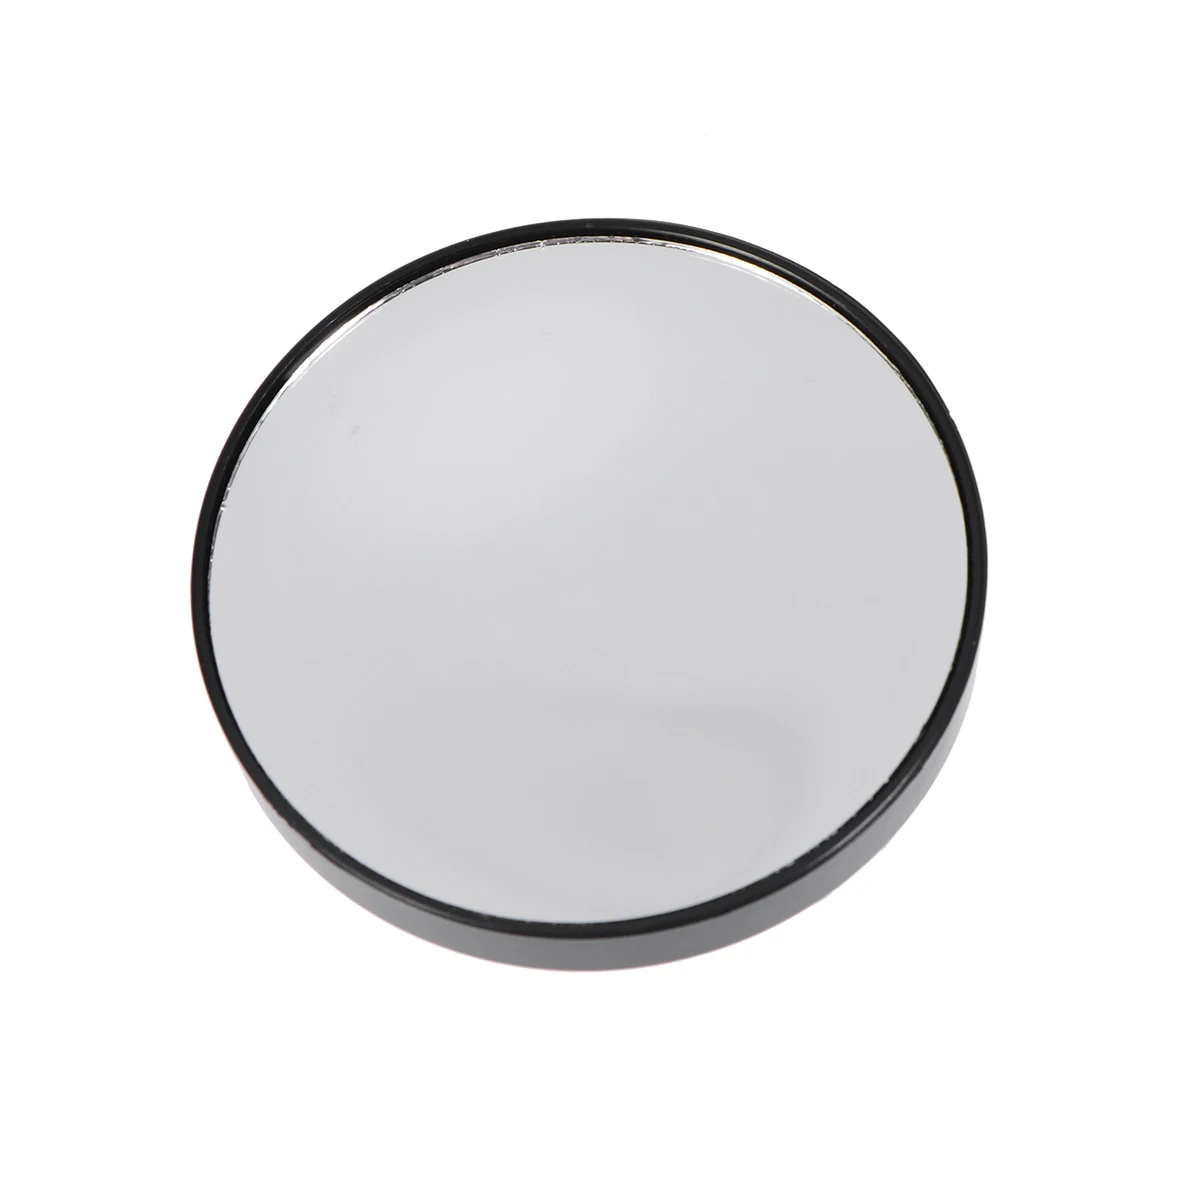 ETEREAUTY 10x увеличительное зеркало для макияжа с 3 присосками карманное косметическое зеркало увеличение компактное зеркало - Цвет: 7.5CM x10